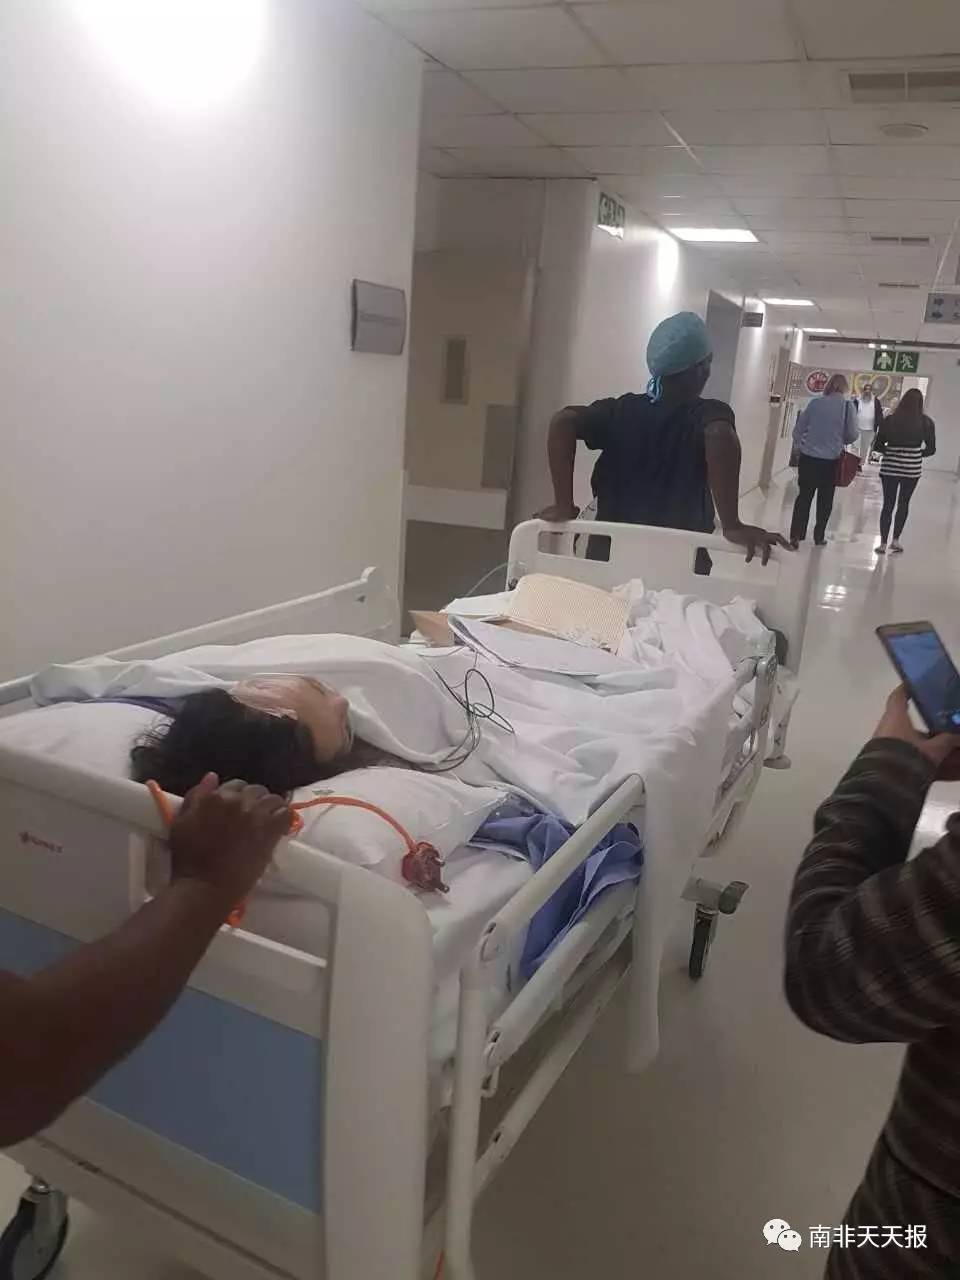 刚动完手术送到医院icu监护室,来自莫桑比克的华人女孩